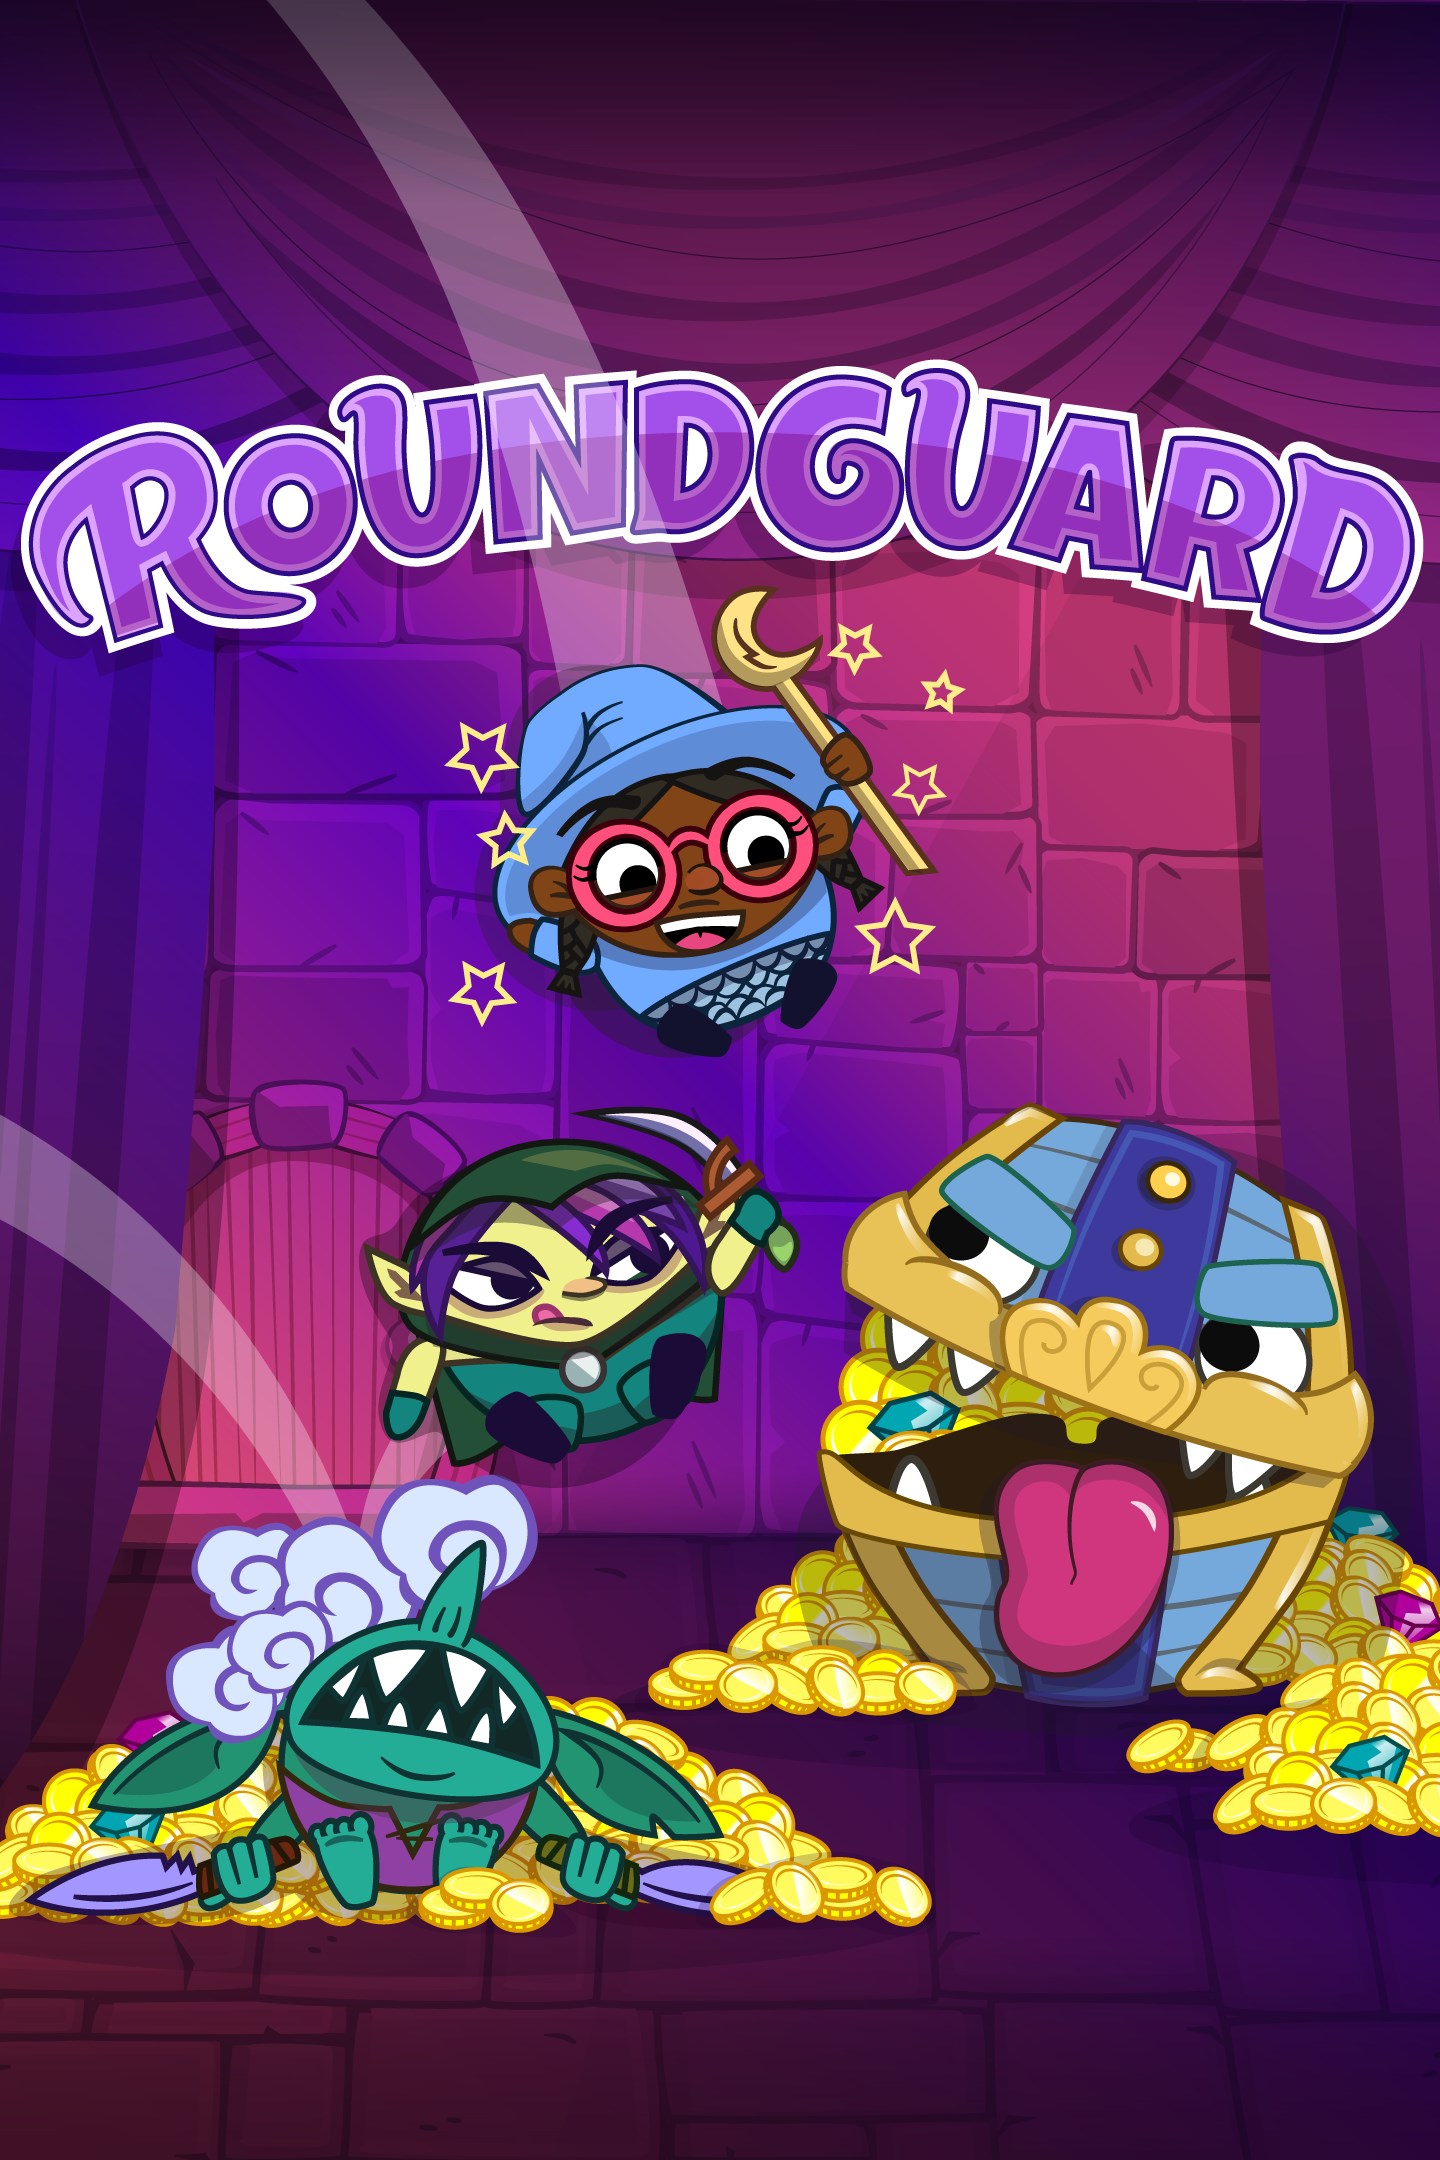 Roundguard trae su combinación única de Dungeon Crawler y Bouncy Physics a Xbox One